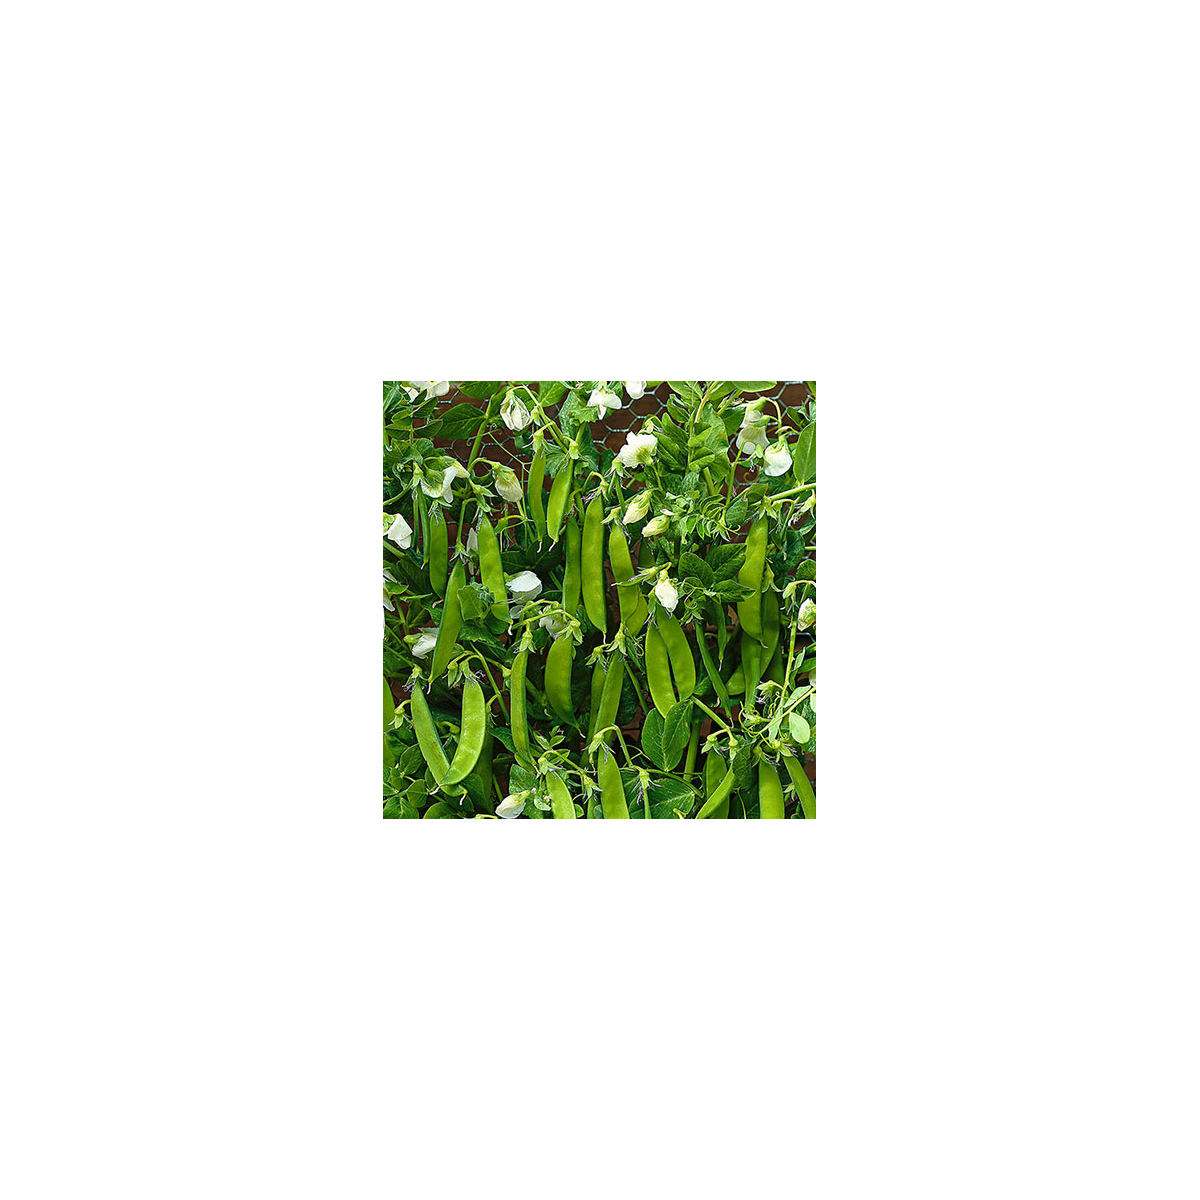 BIO Hrách cukrový Norli - Pisum sativum - bio semena - 15 g